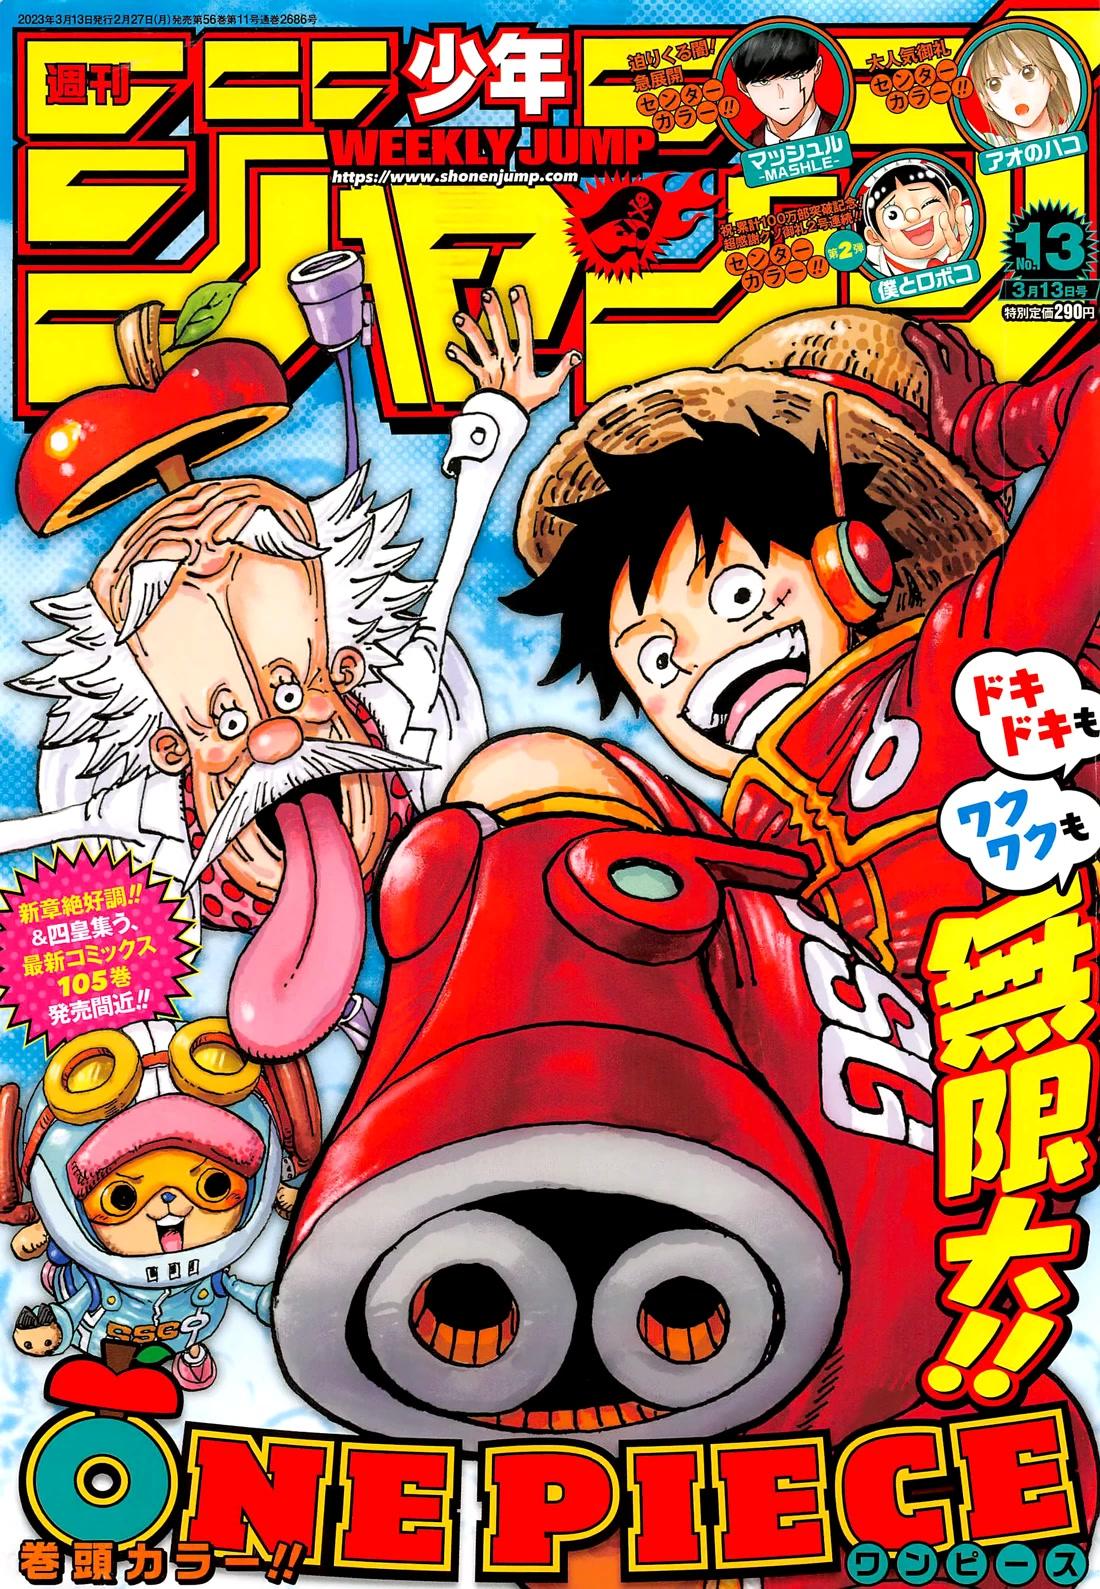 Read One Piece Chapter 1076: On Mangakakalot